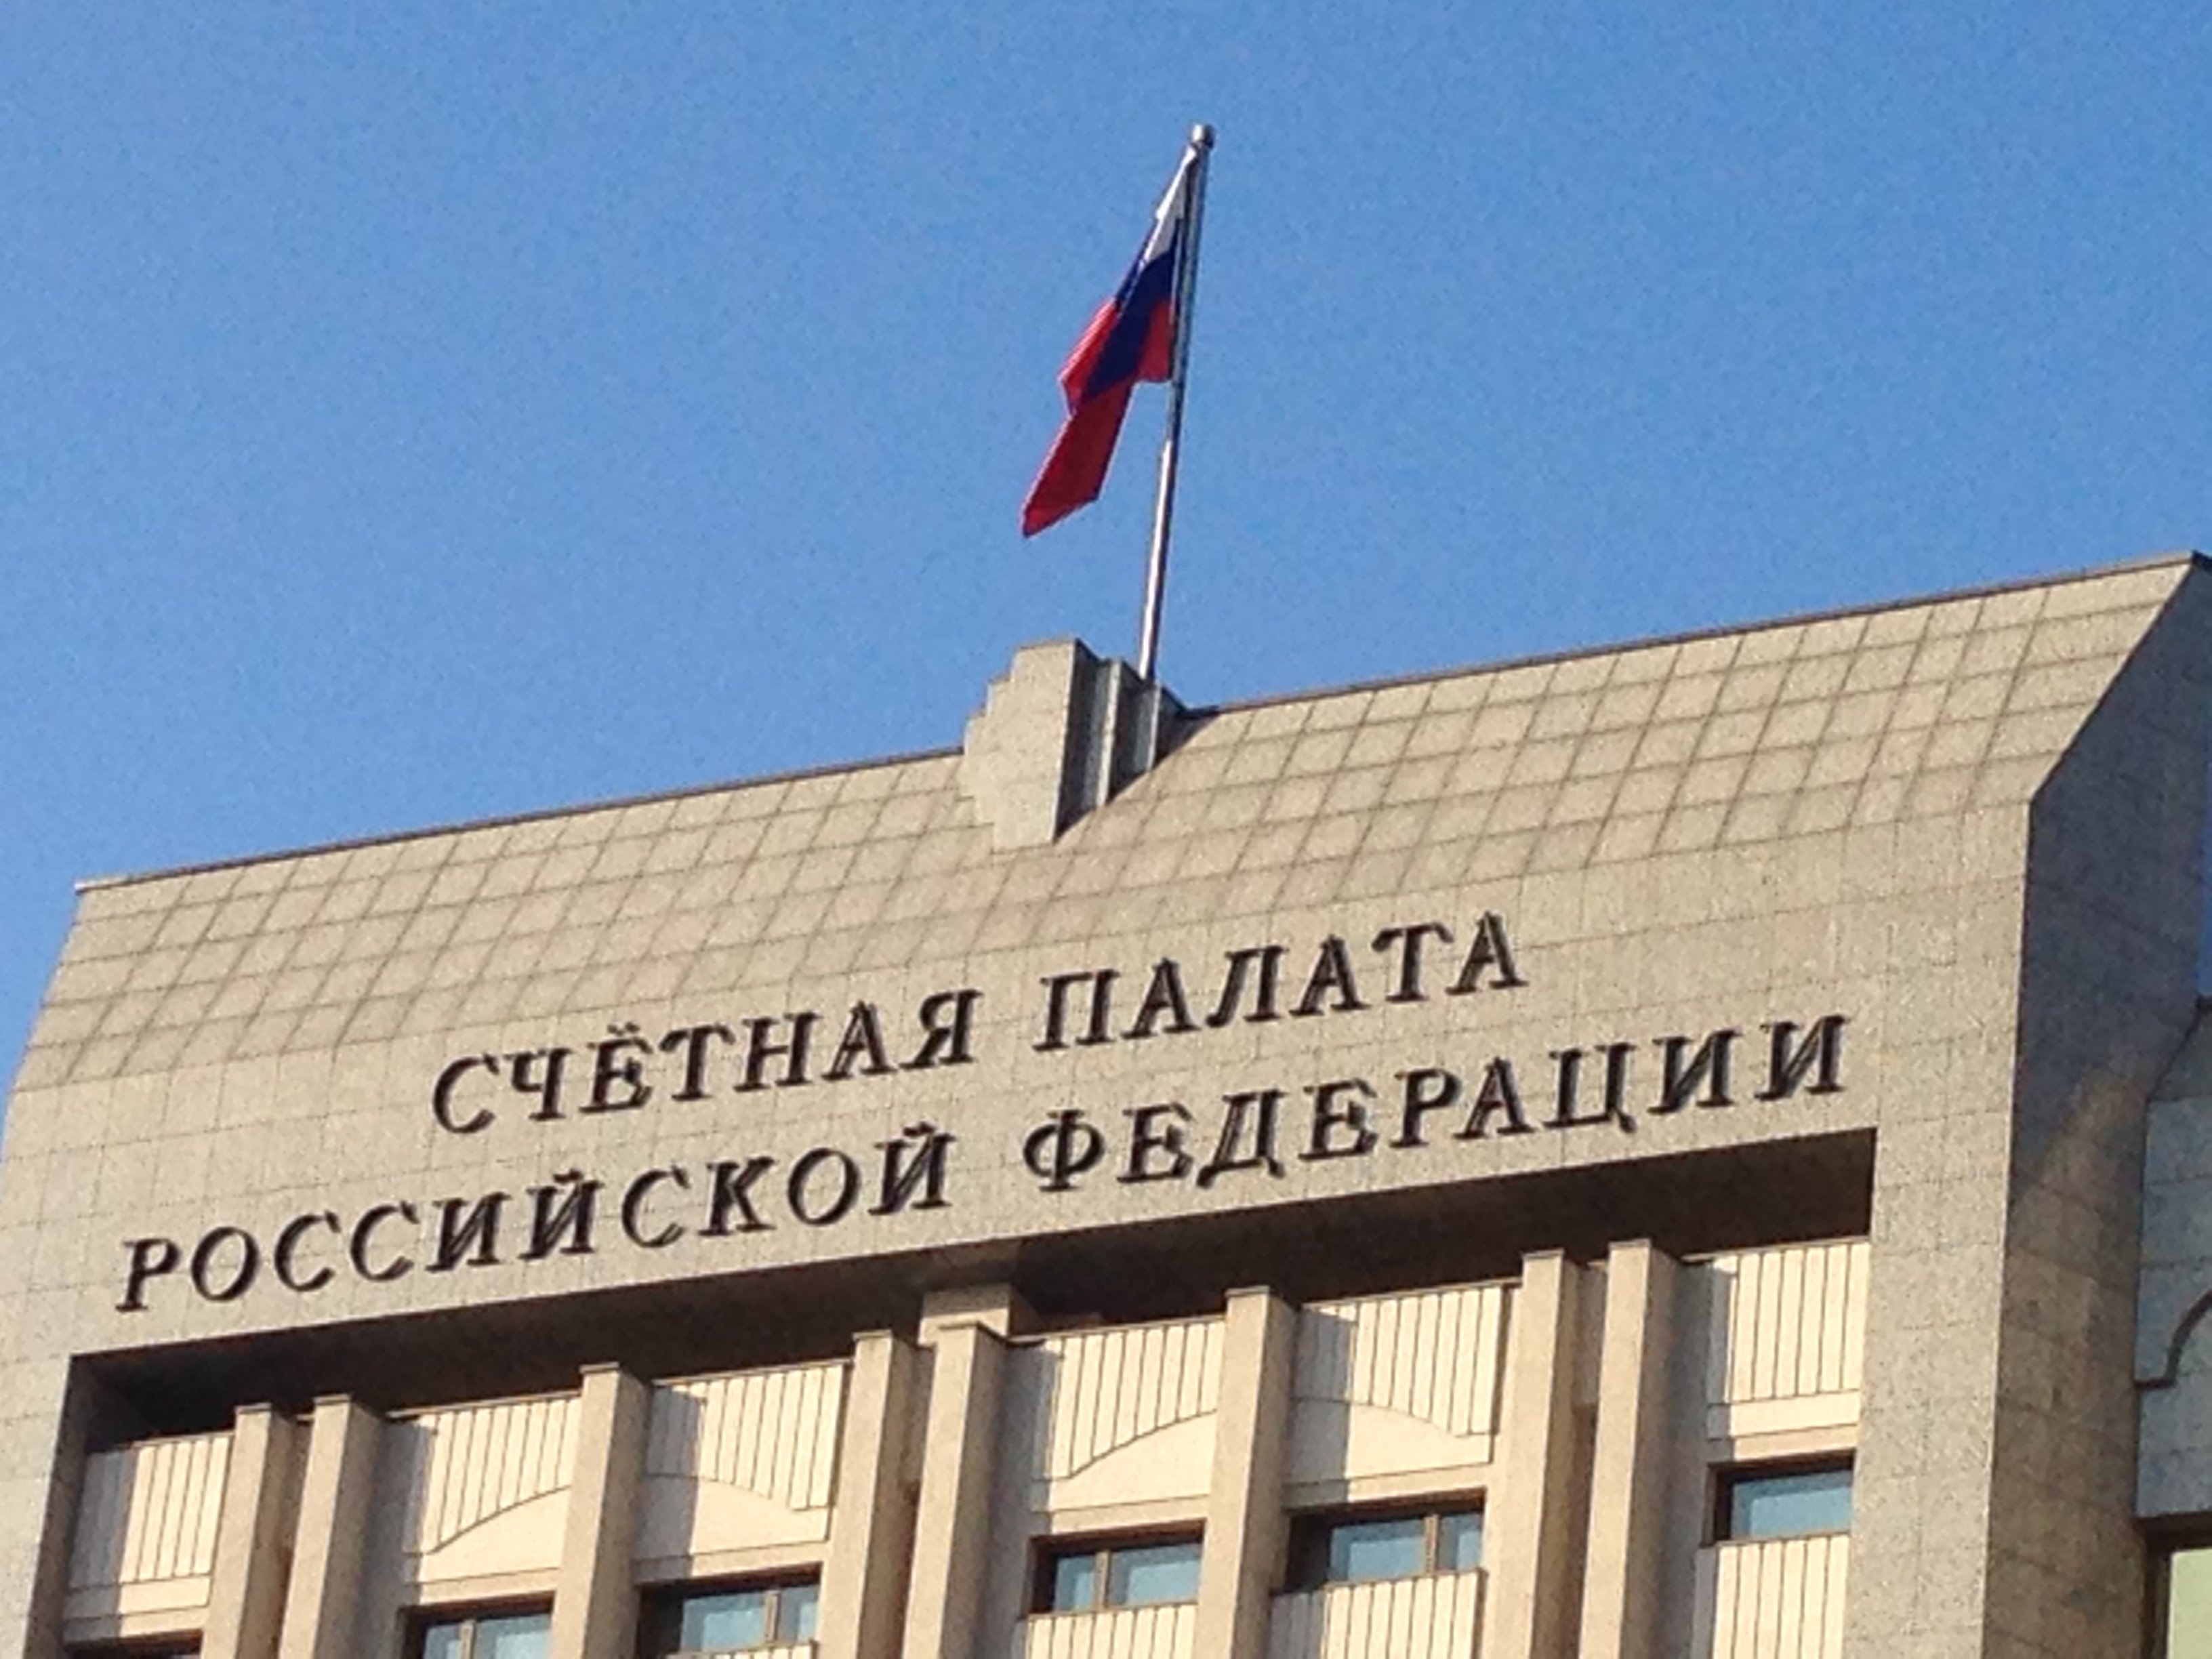 Алексей Кудрин представил отчет Счетной палаты за 2020 год